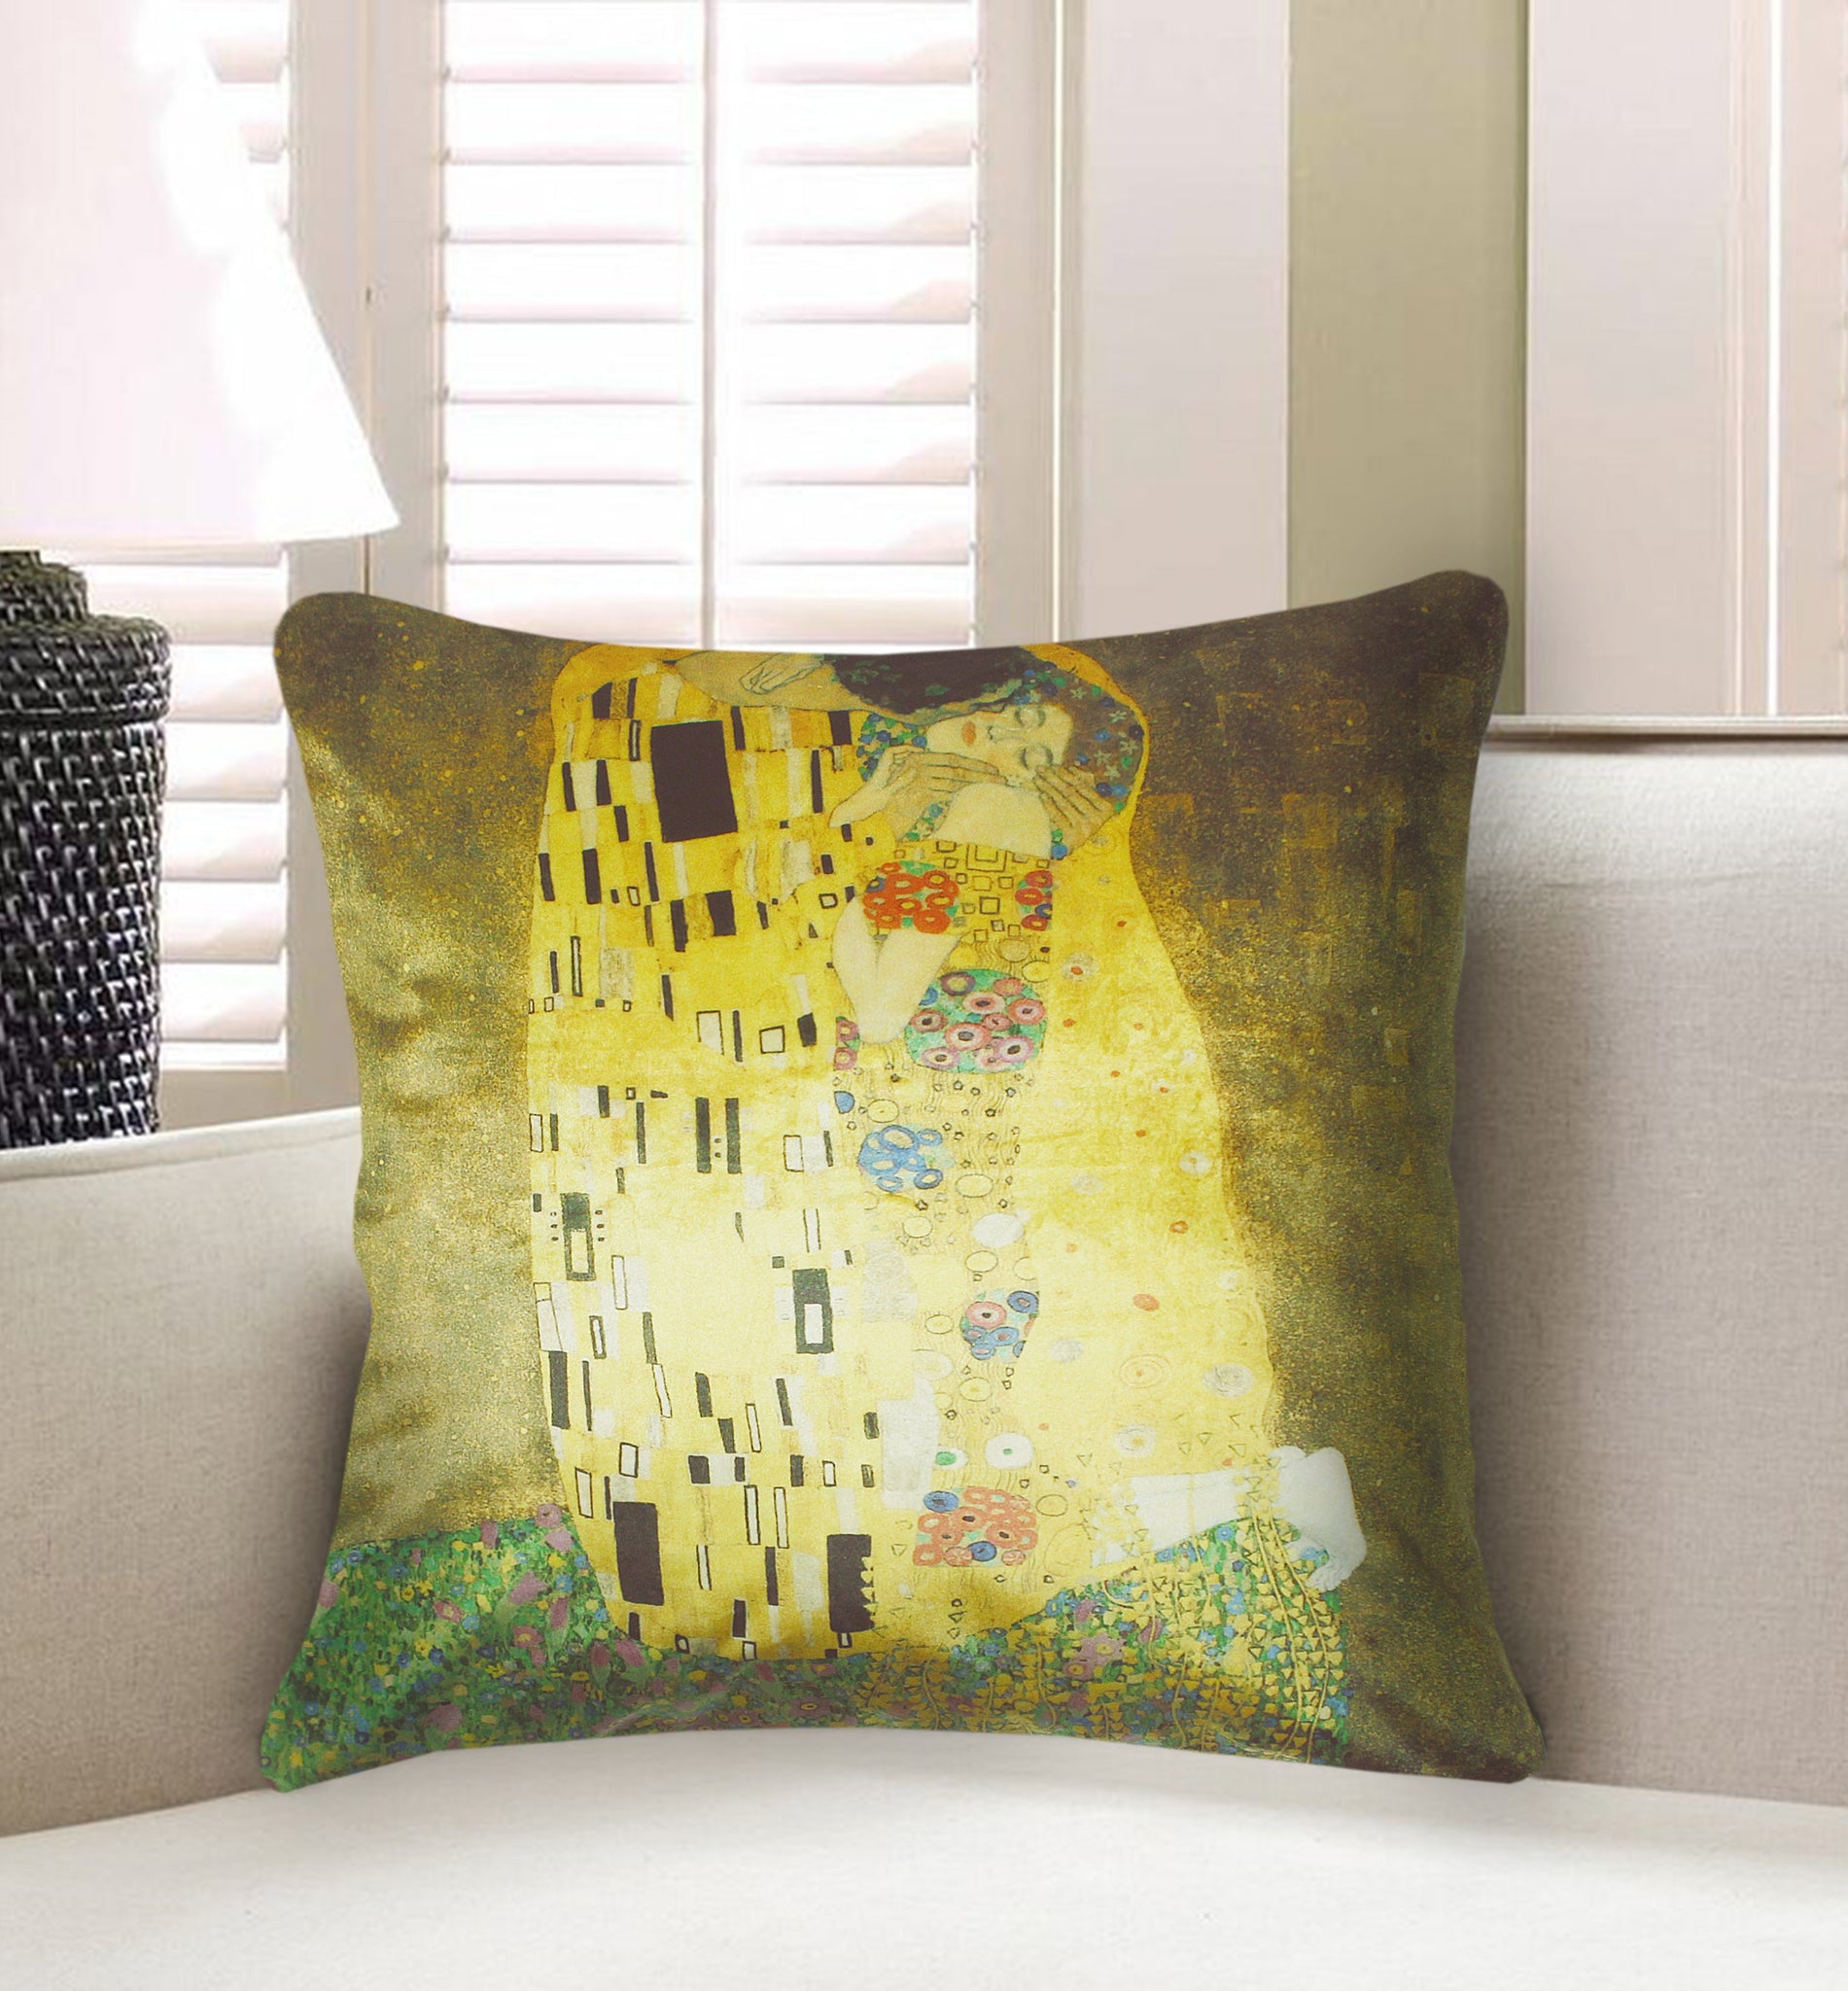 Golden Velvet Cushion Cover Gustav Klimt's Kiss Paint Decorative Pillow Cover Home Decor Throw Pillow for Sofa Chair Bedroom 45x45 cm 18x18 In